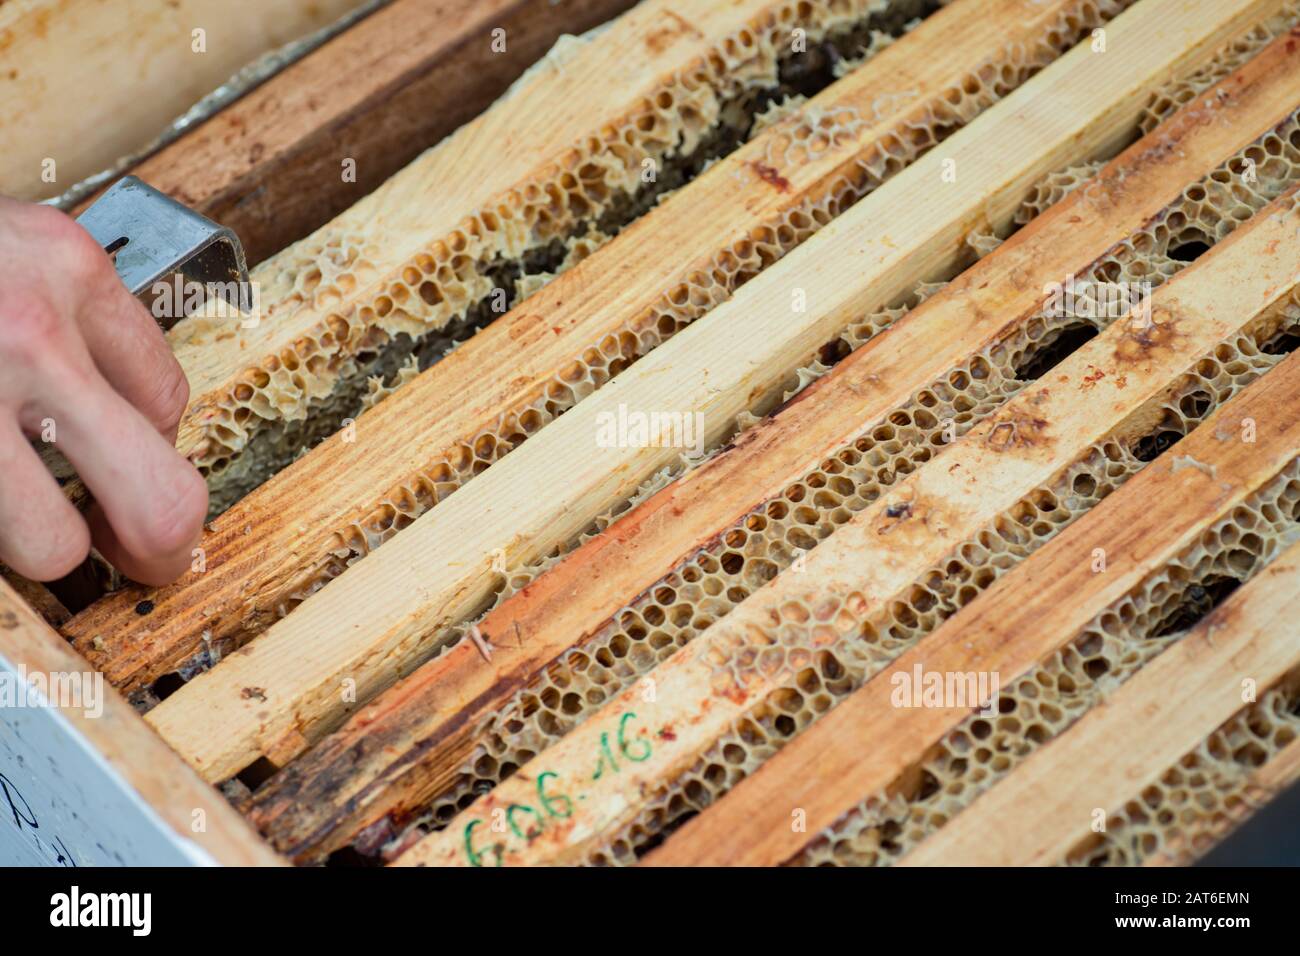 Le apiculteur pousse les cadres avec les abeilles à miel dans la ruche. Foyer sélectif. Mise au point douce Banque D'Images